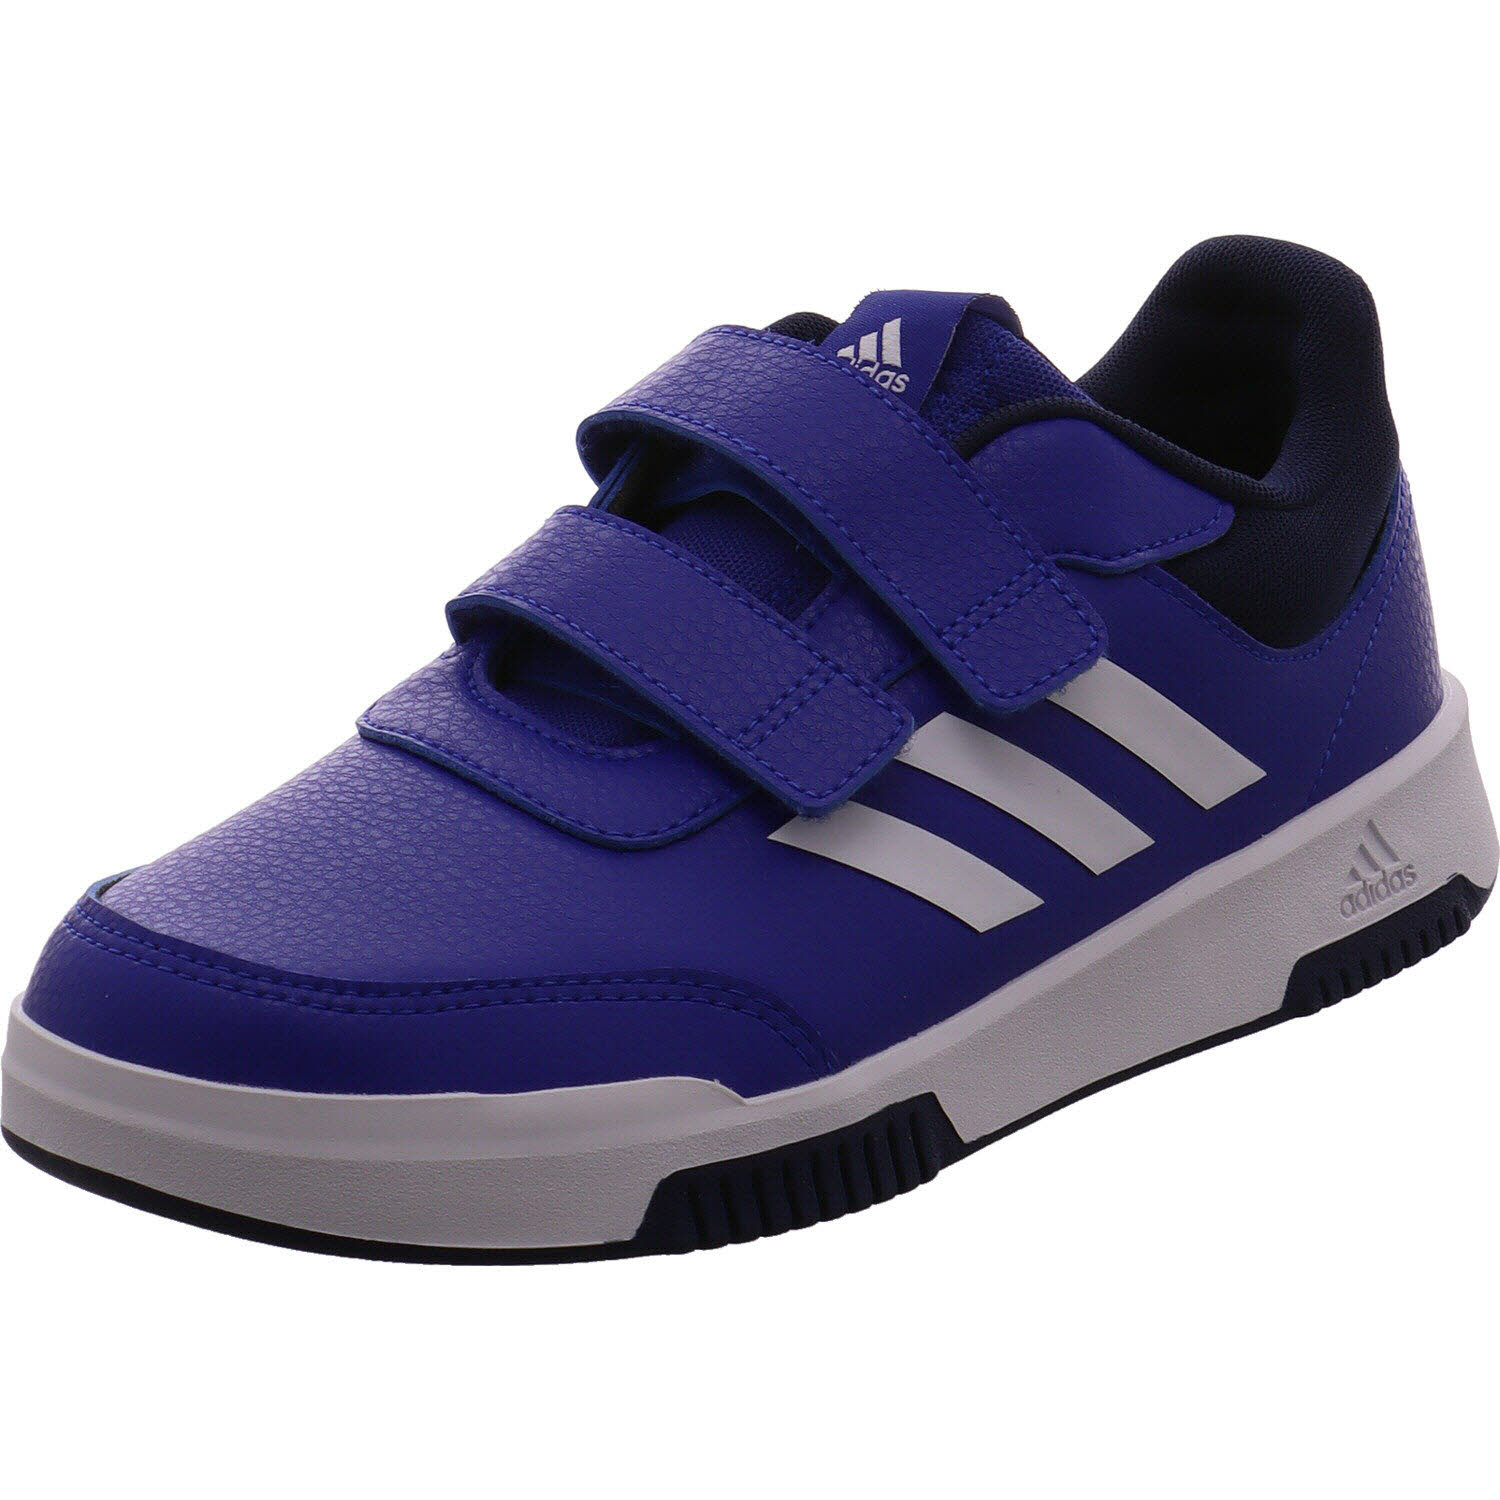 Jungen Sneaker low von Adidas auch in Blau erhältlich